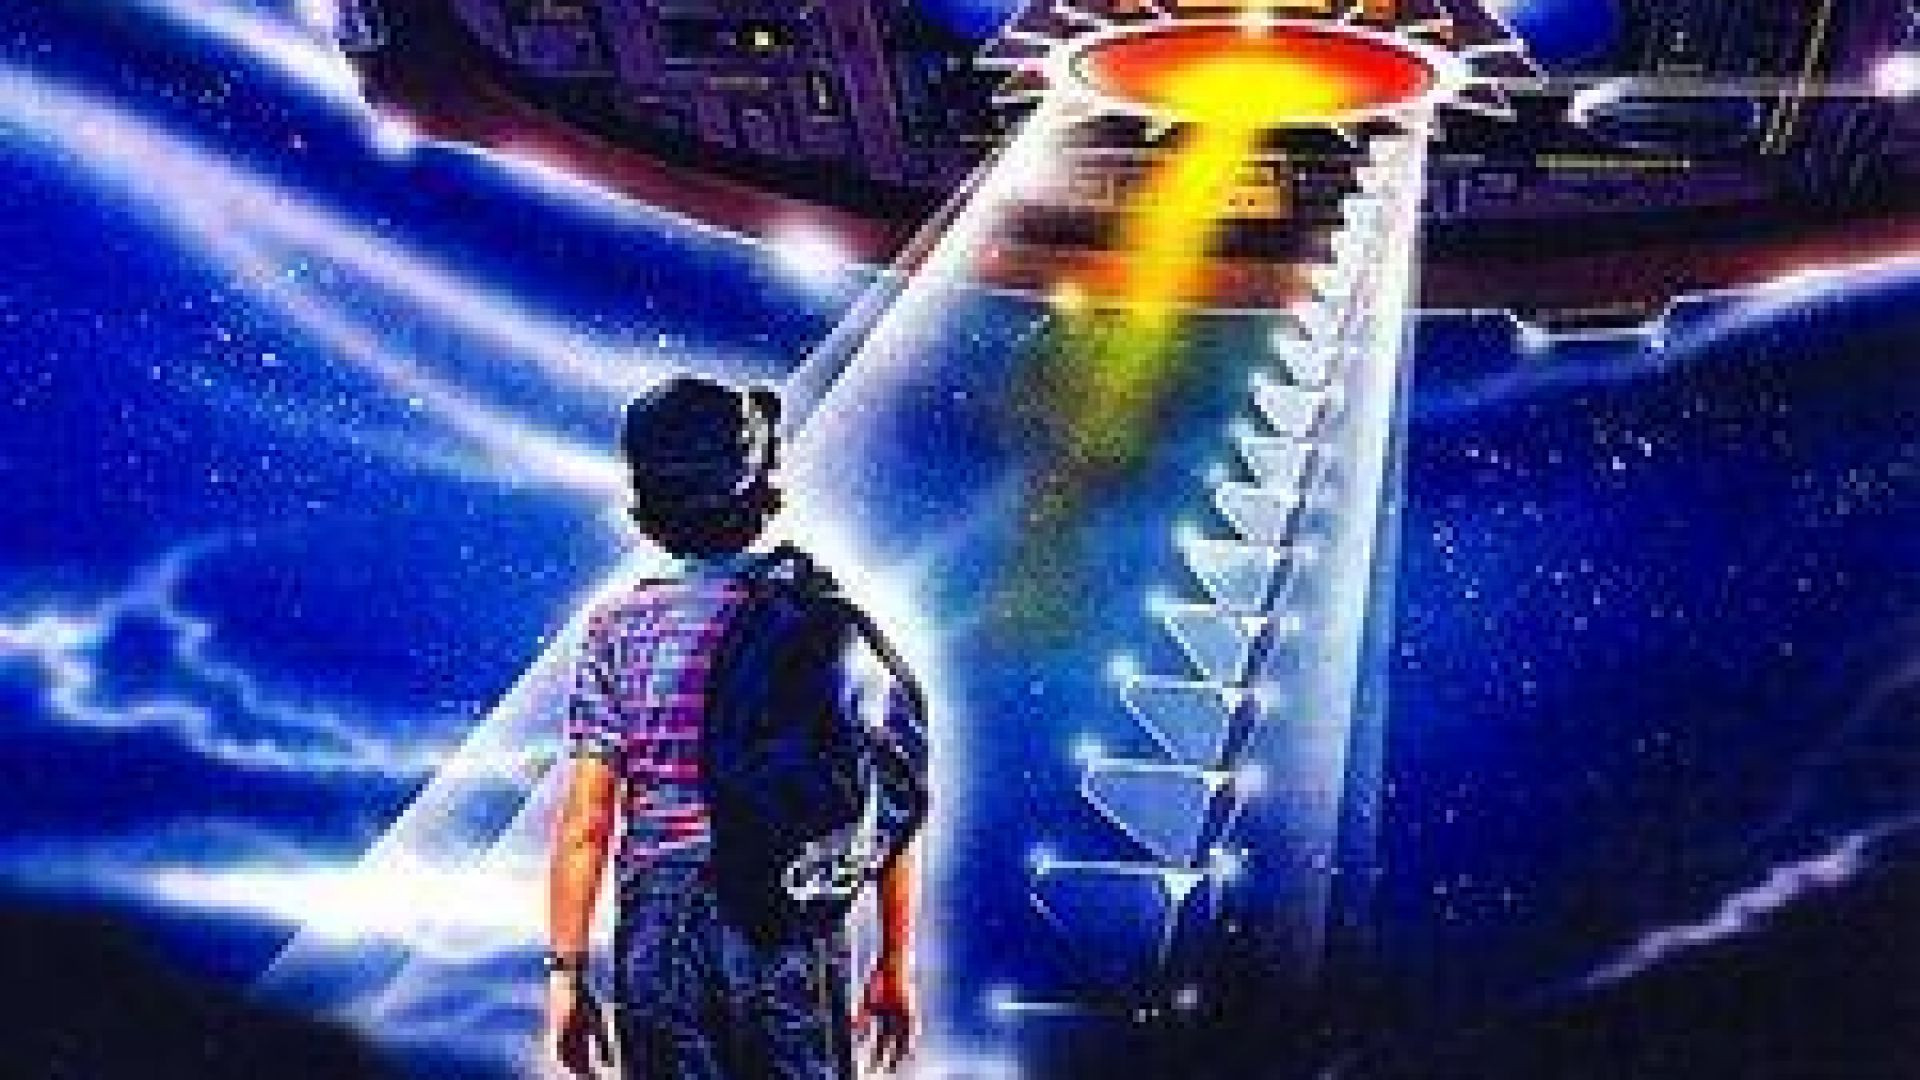 Película "El vuelo del navegnate" 1986 (Castellano)